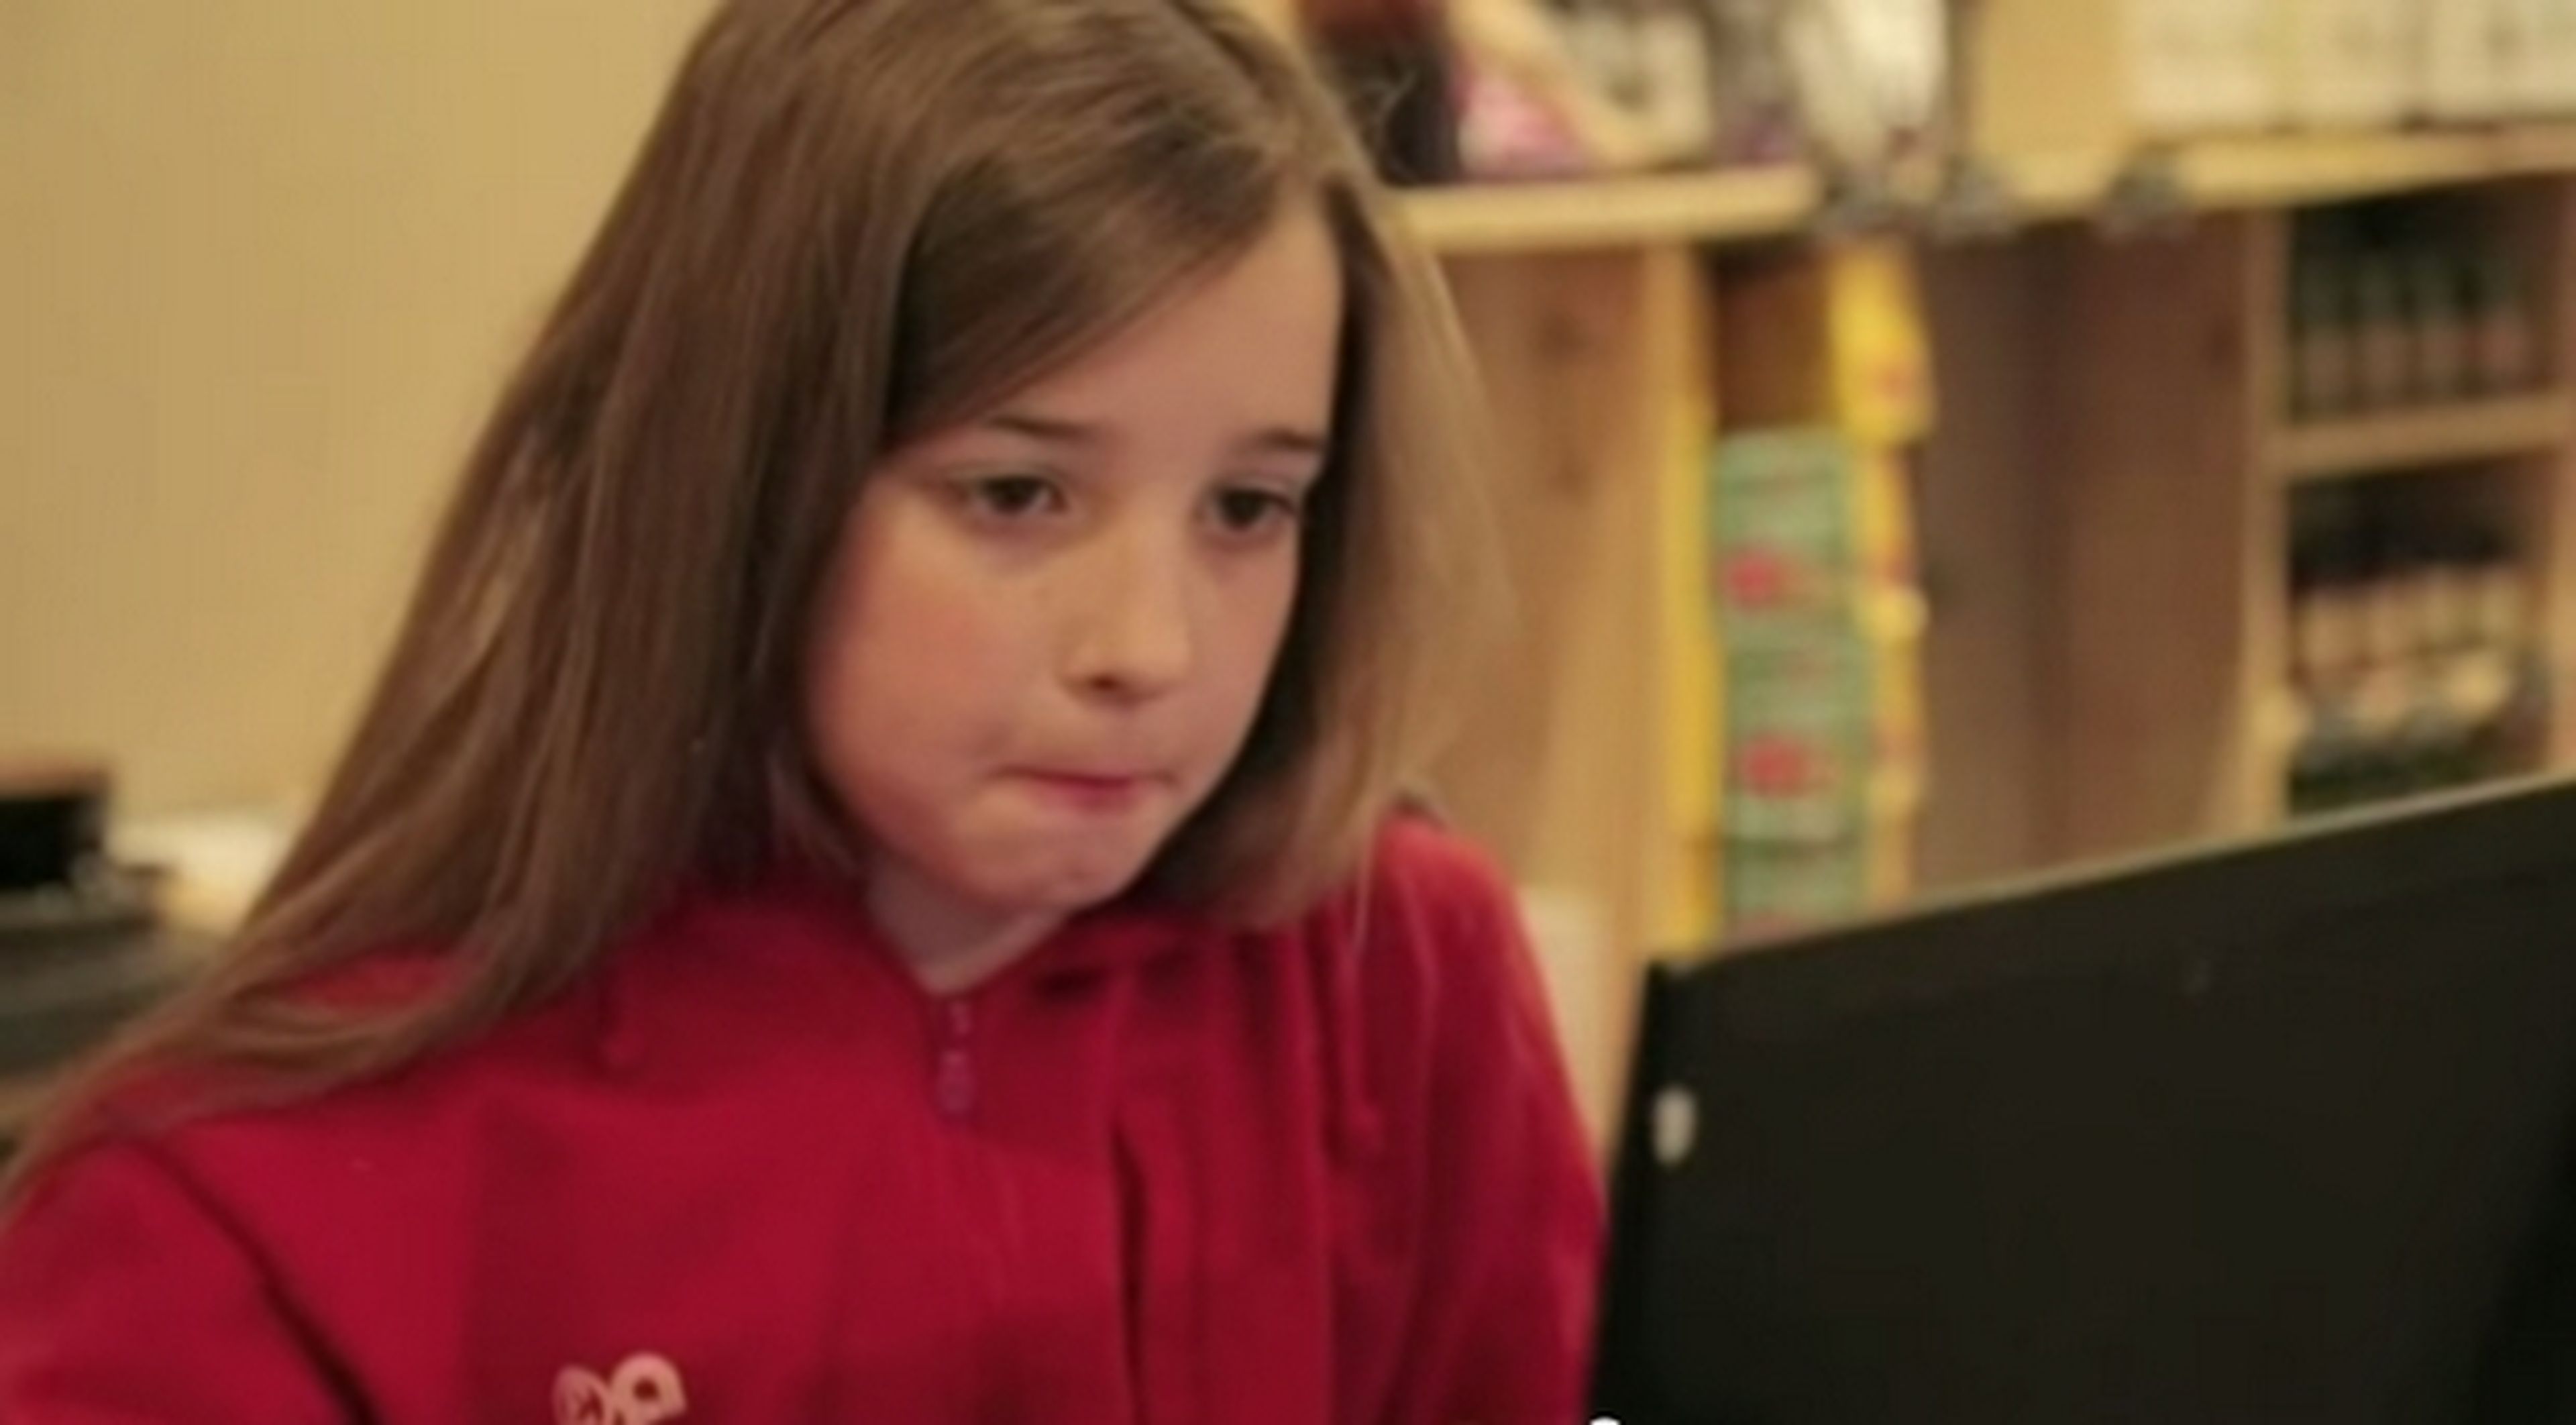 Red WiFi gratuita hackeada por niña de 7 años